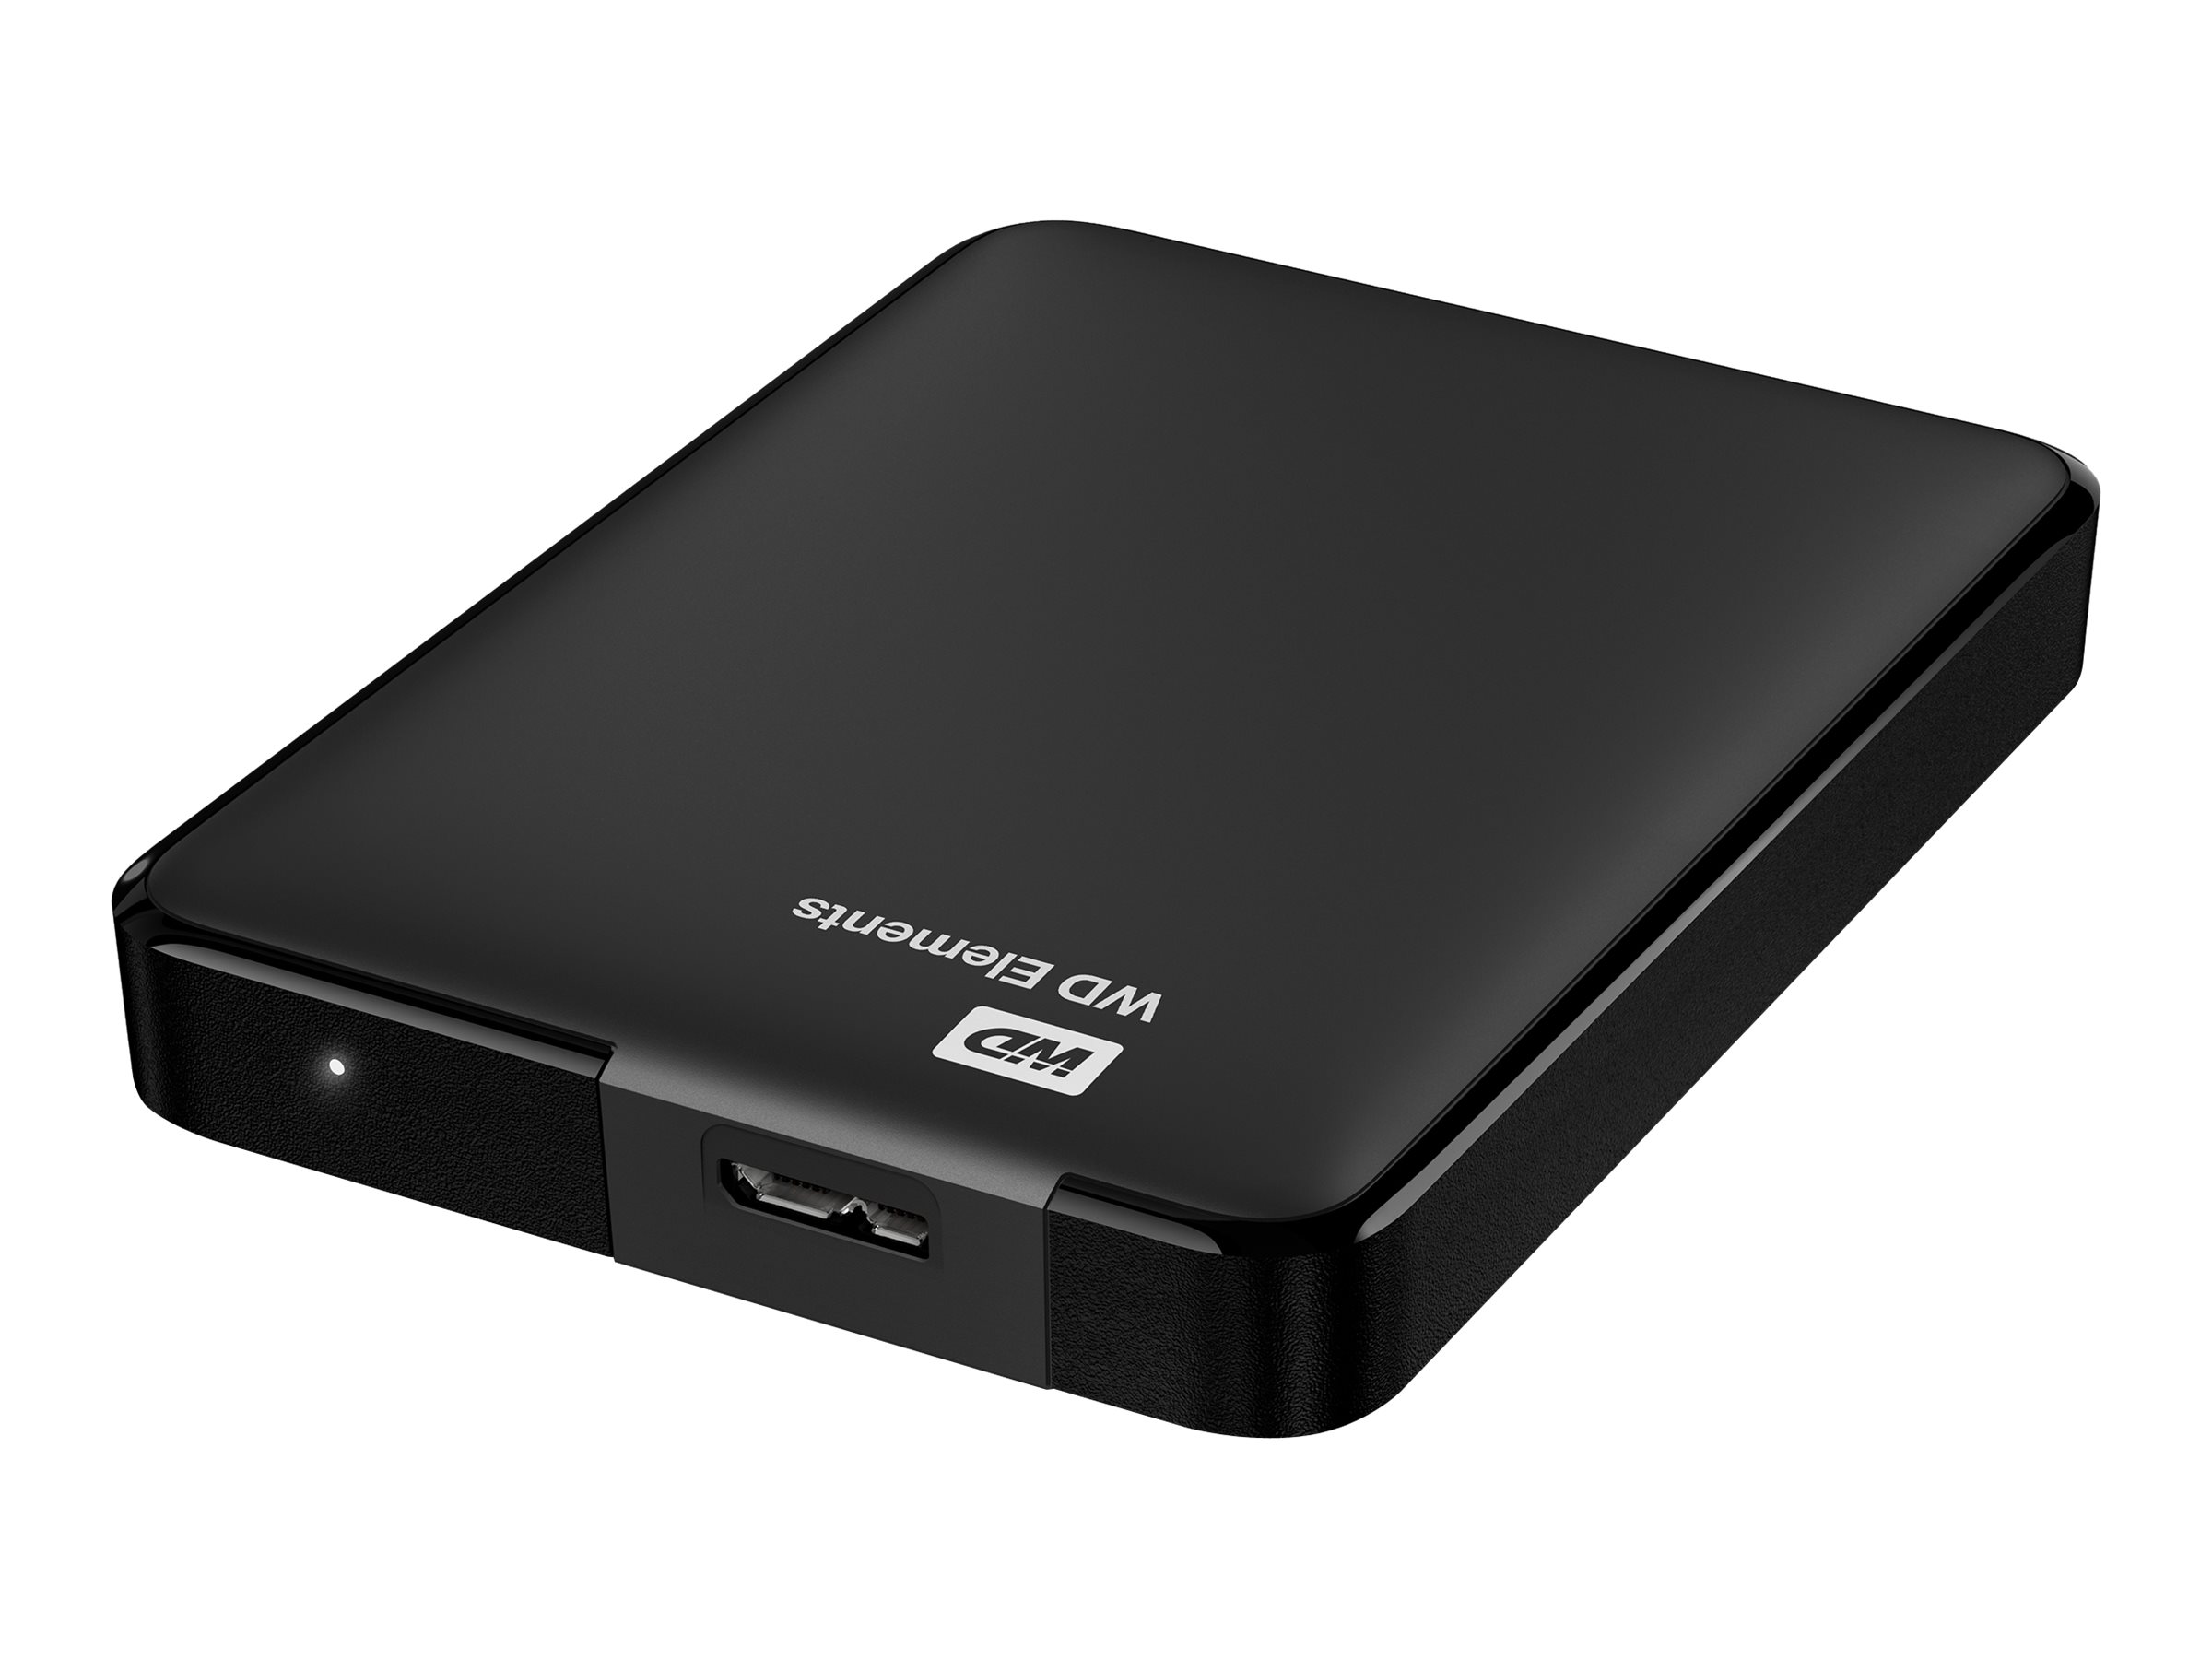 WD Elements Portable WDBU6Y0020BBK - Festplatte - 2 TB - extern (tragbar)